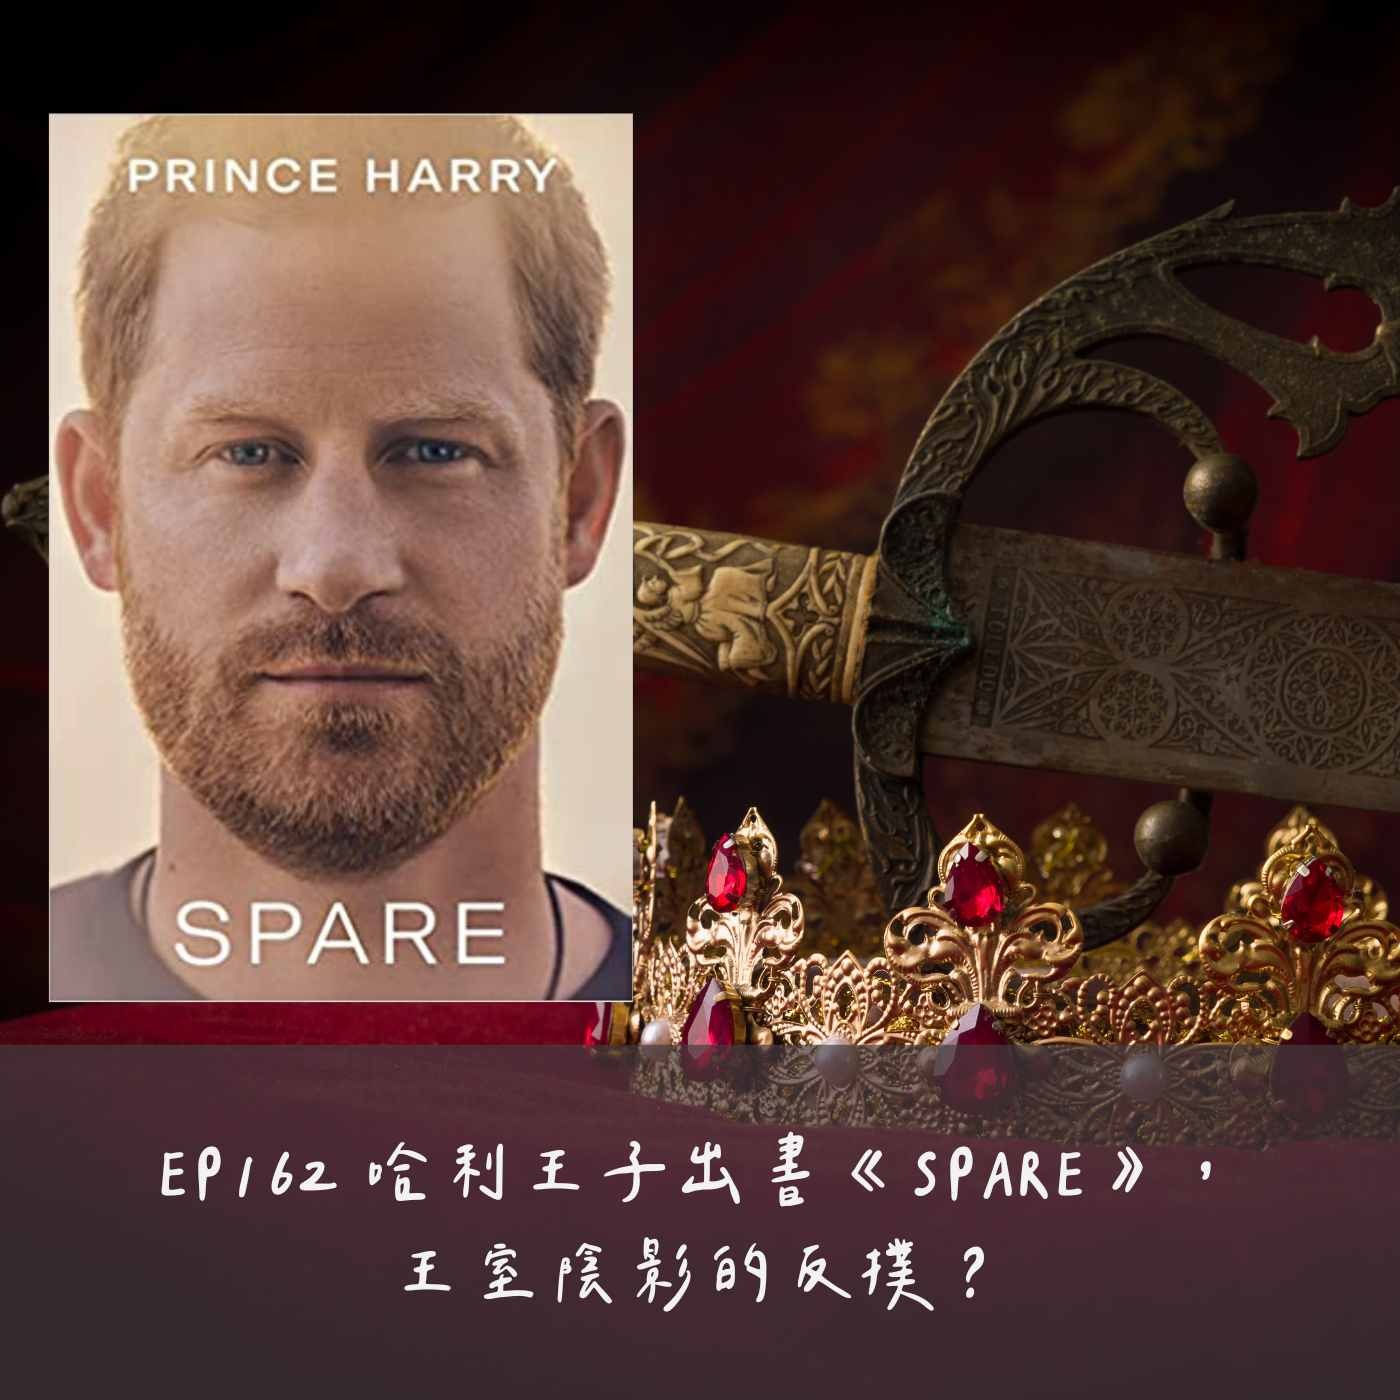 EP162 哈利王子出書《SPARE》，王室陰影的反撲？